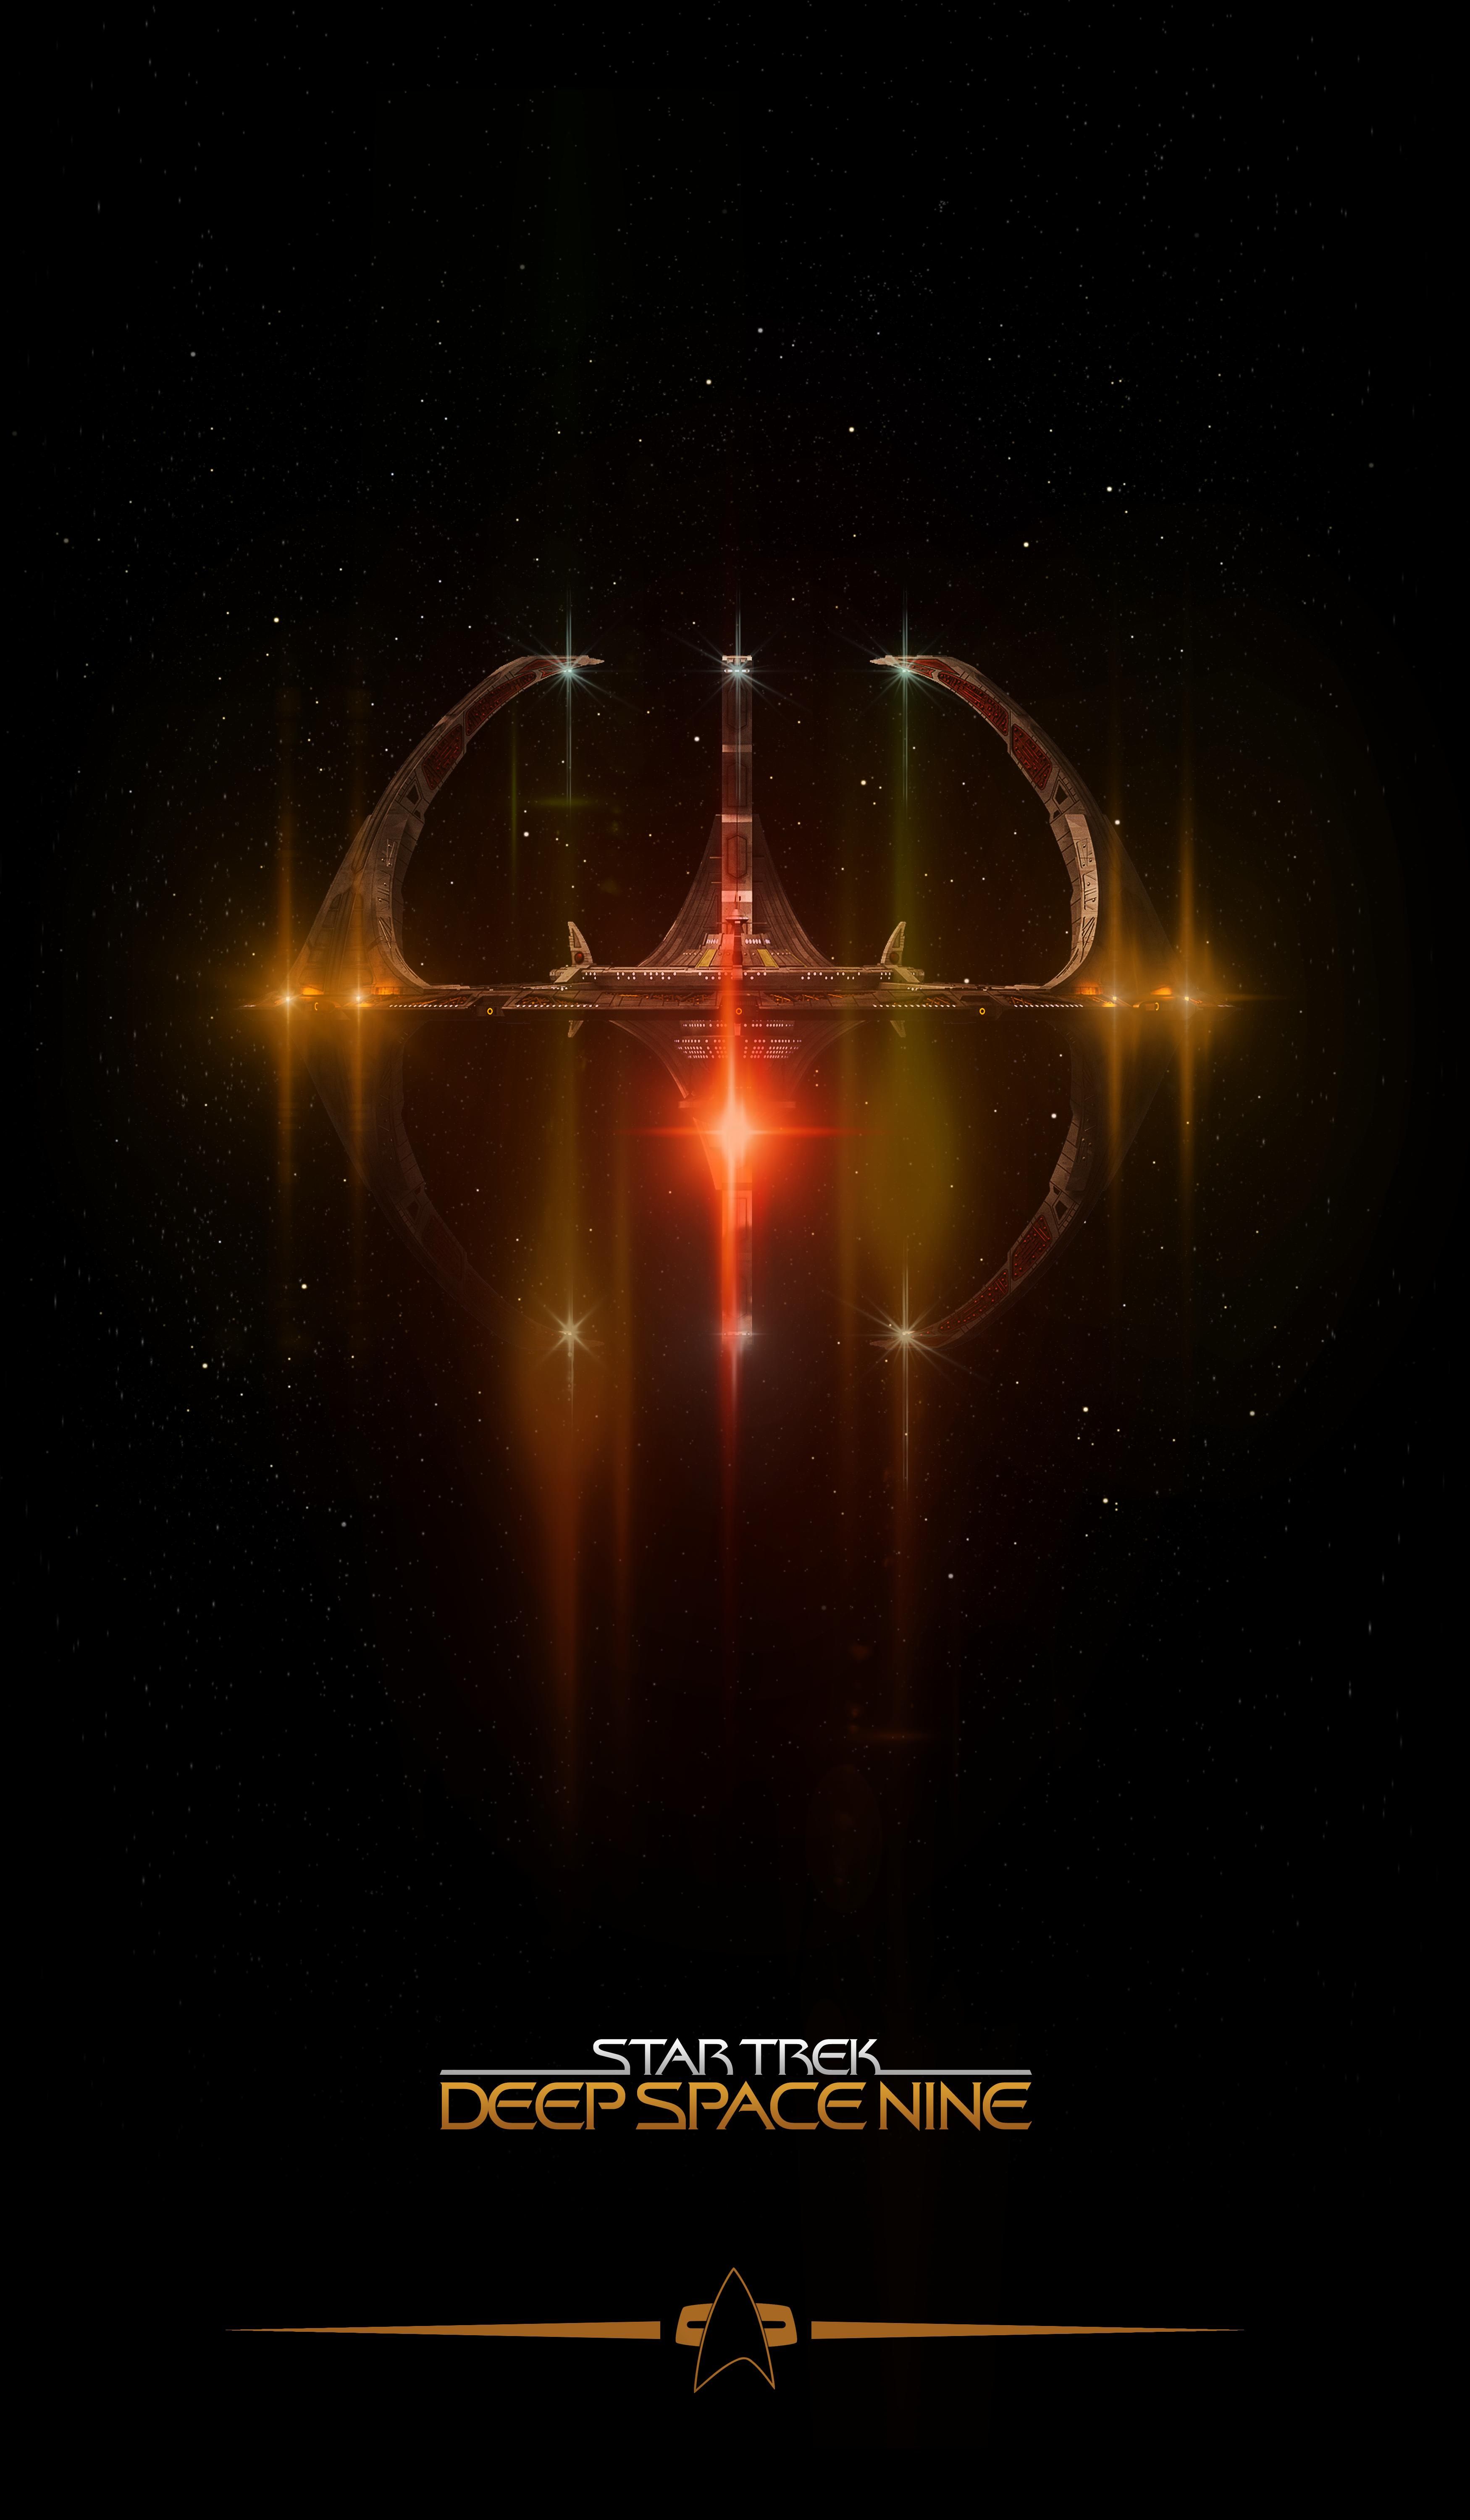 Star Trek: Deep Space Nine, by Lewis Niven. Star trek posters